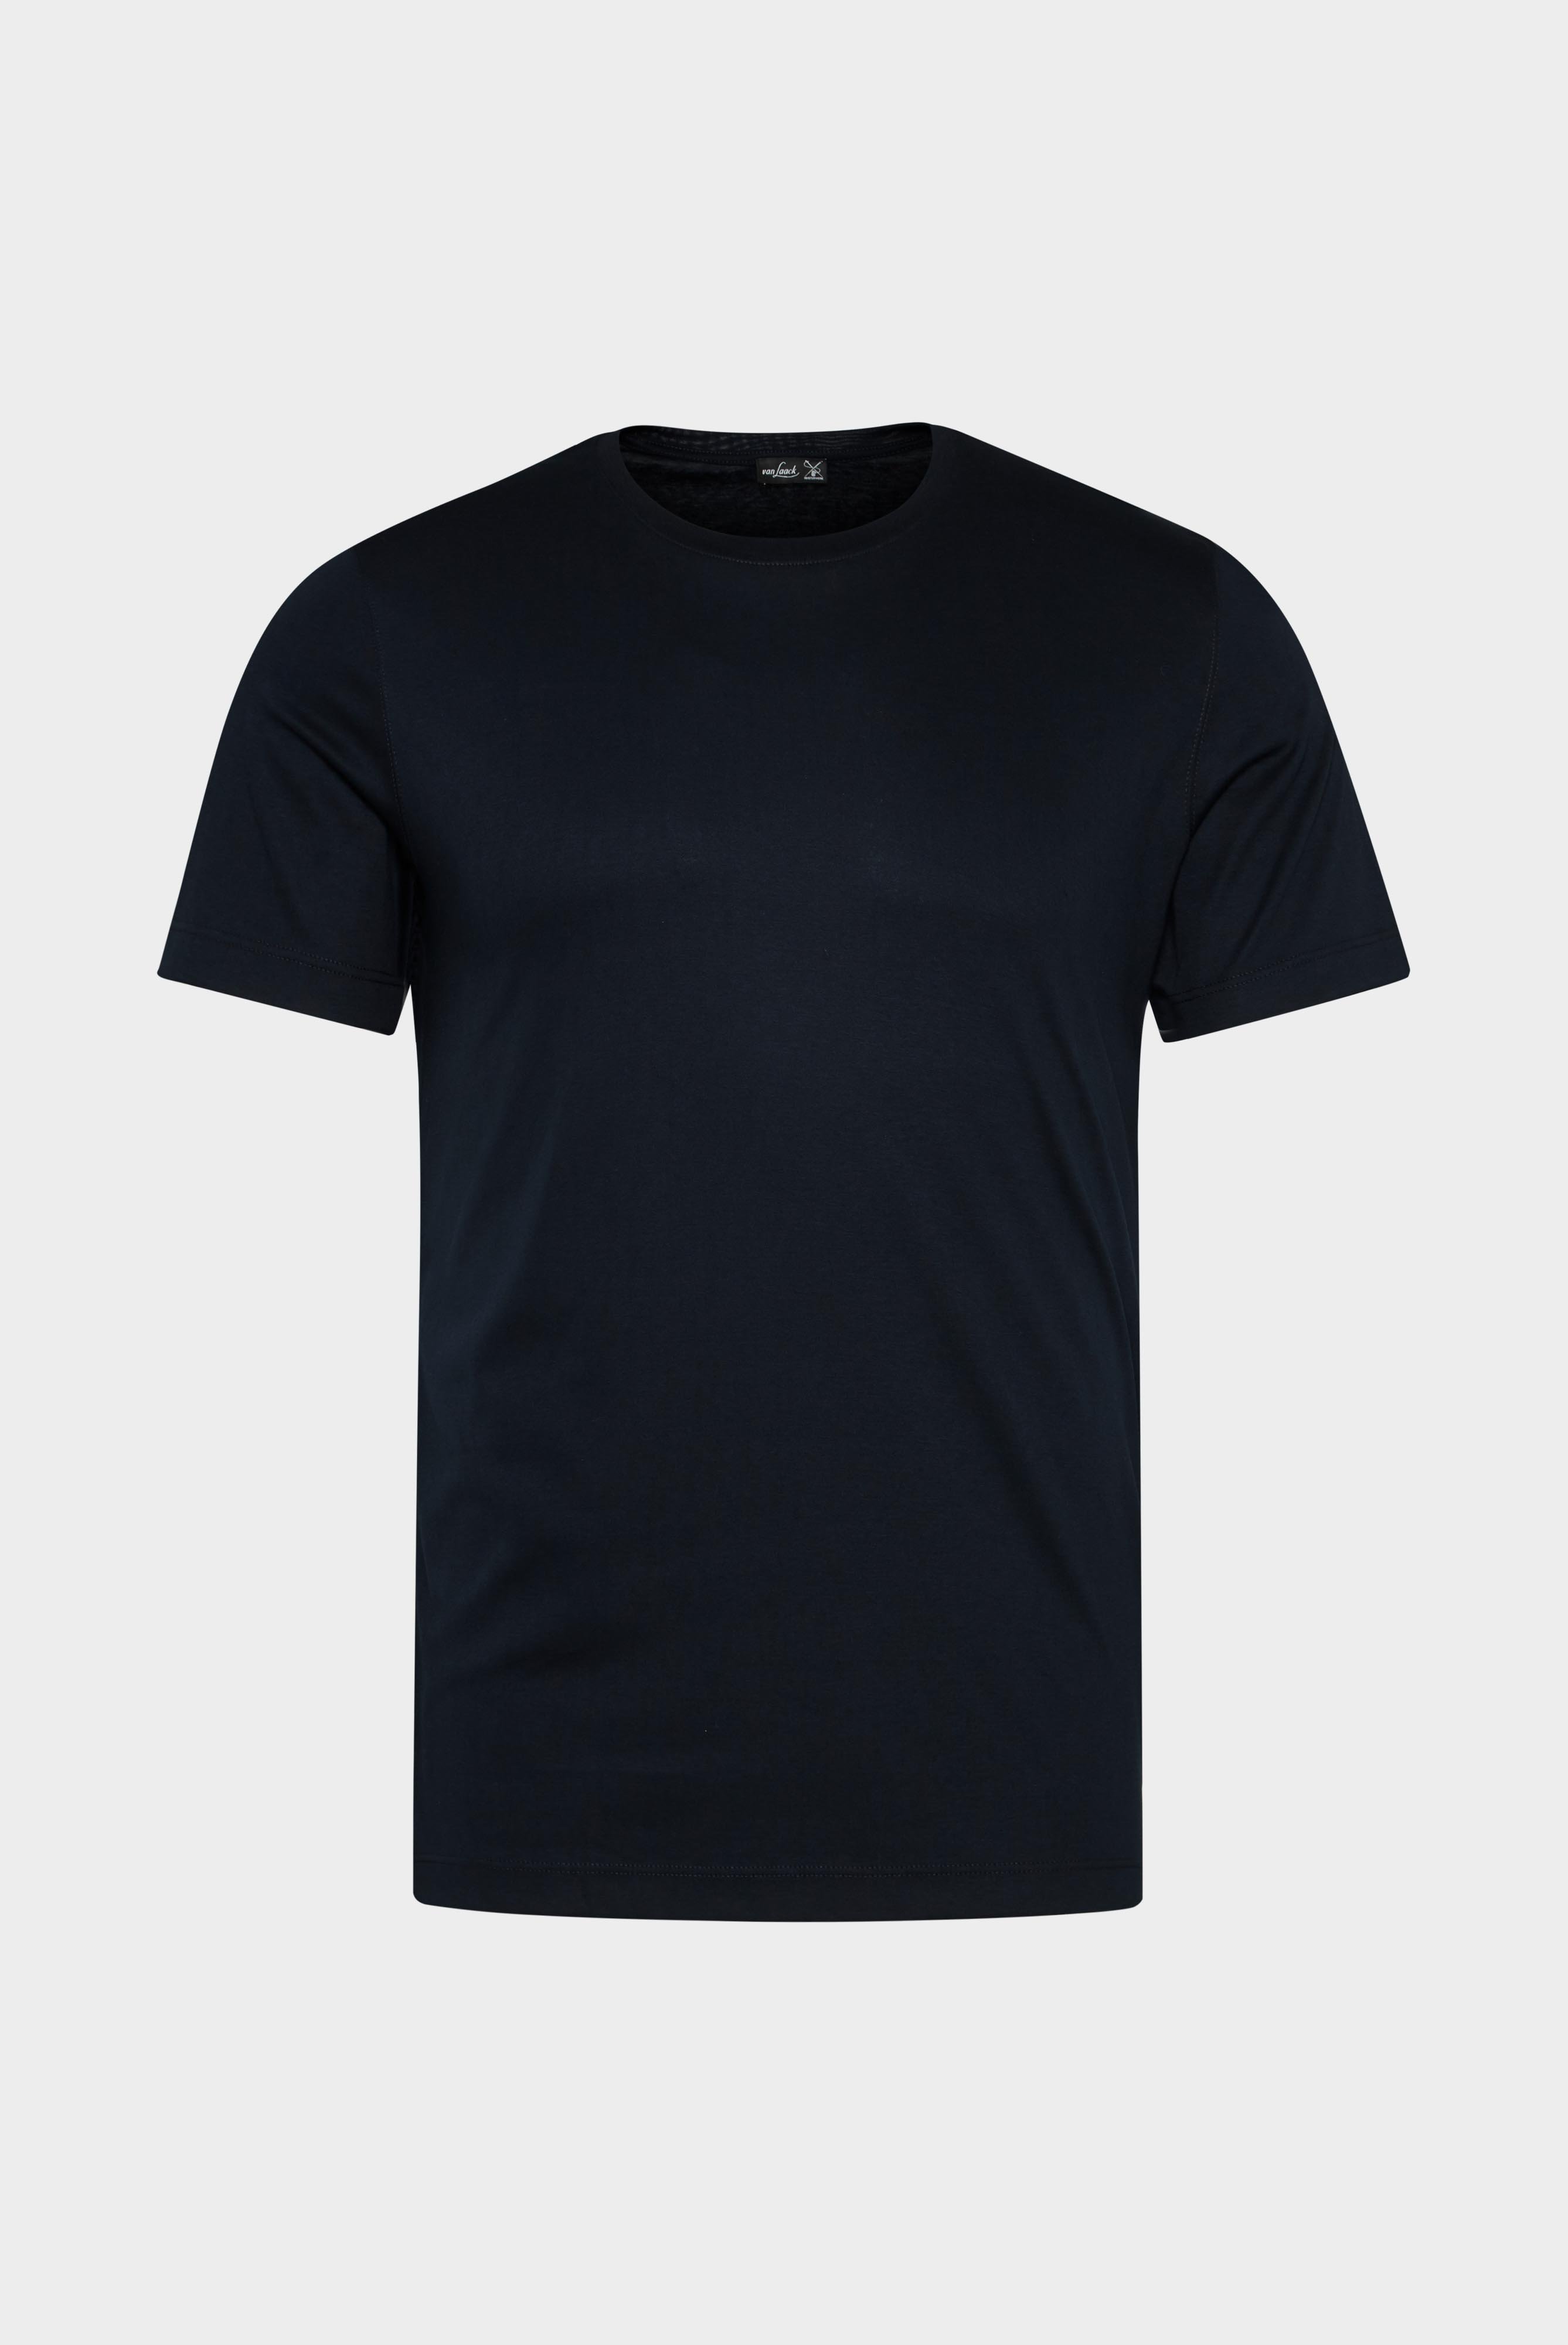 T-Shirts+Rundhals Jersey T-Shirt Slim Fit+20.1717.UX.180031.790.X4L